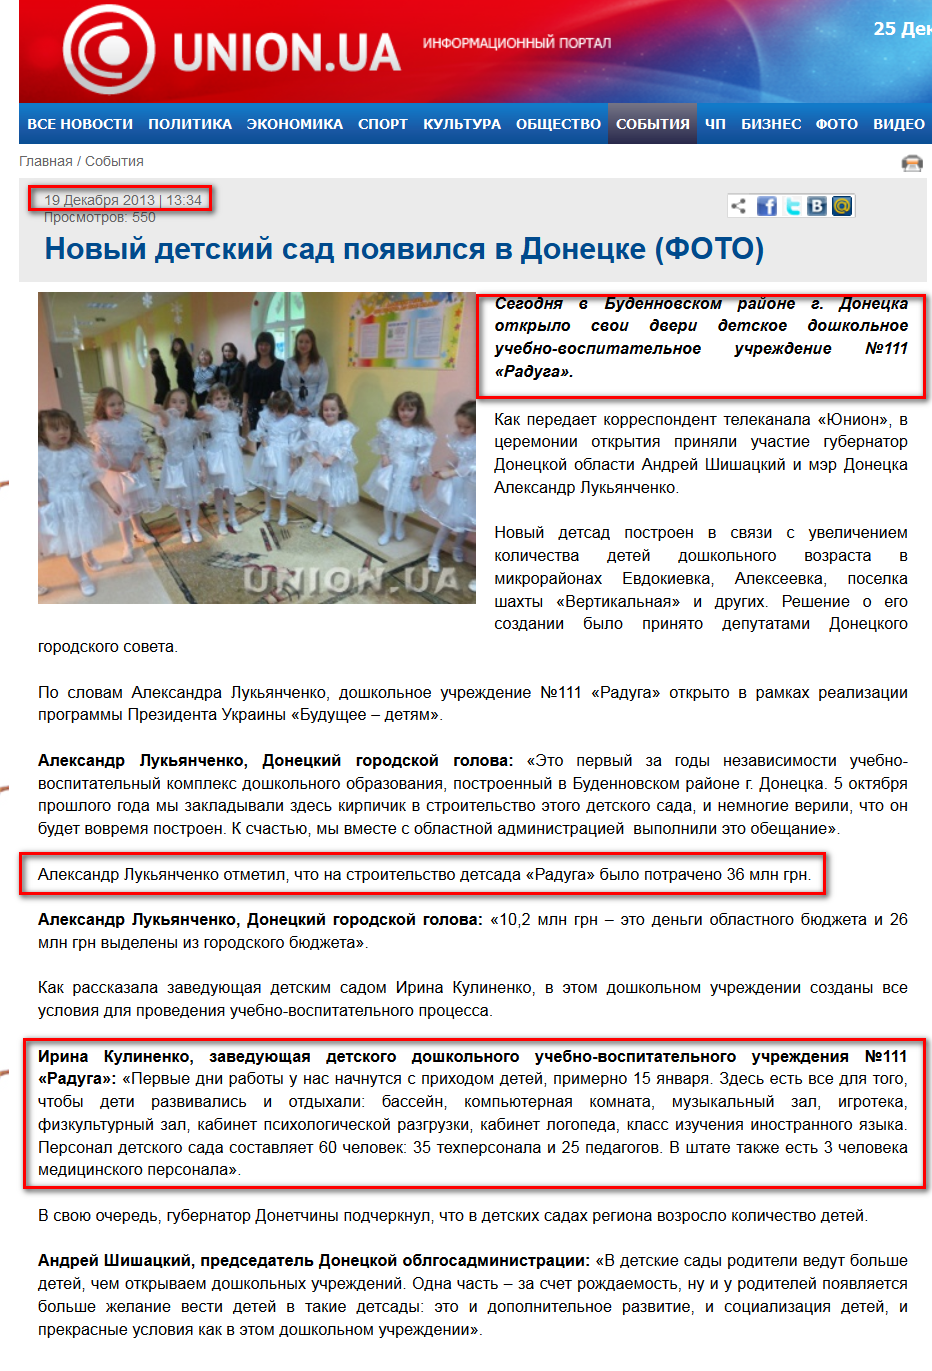 http://union.ua/news/events/novyy_detskiy_sad_poyavilsya_v_donetske_foto/